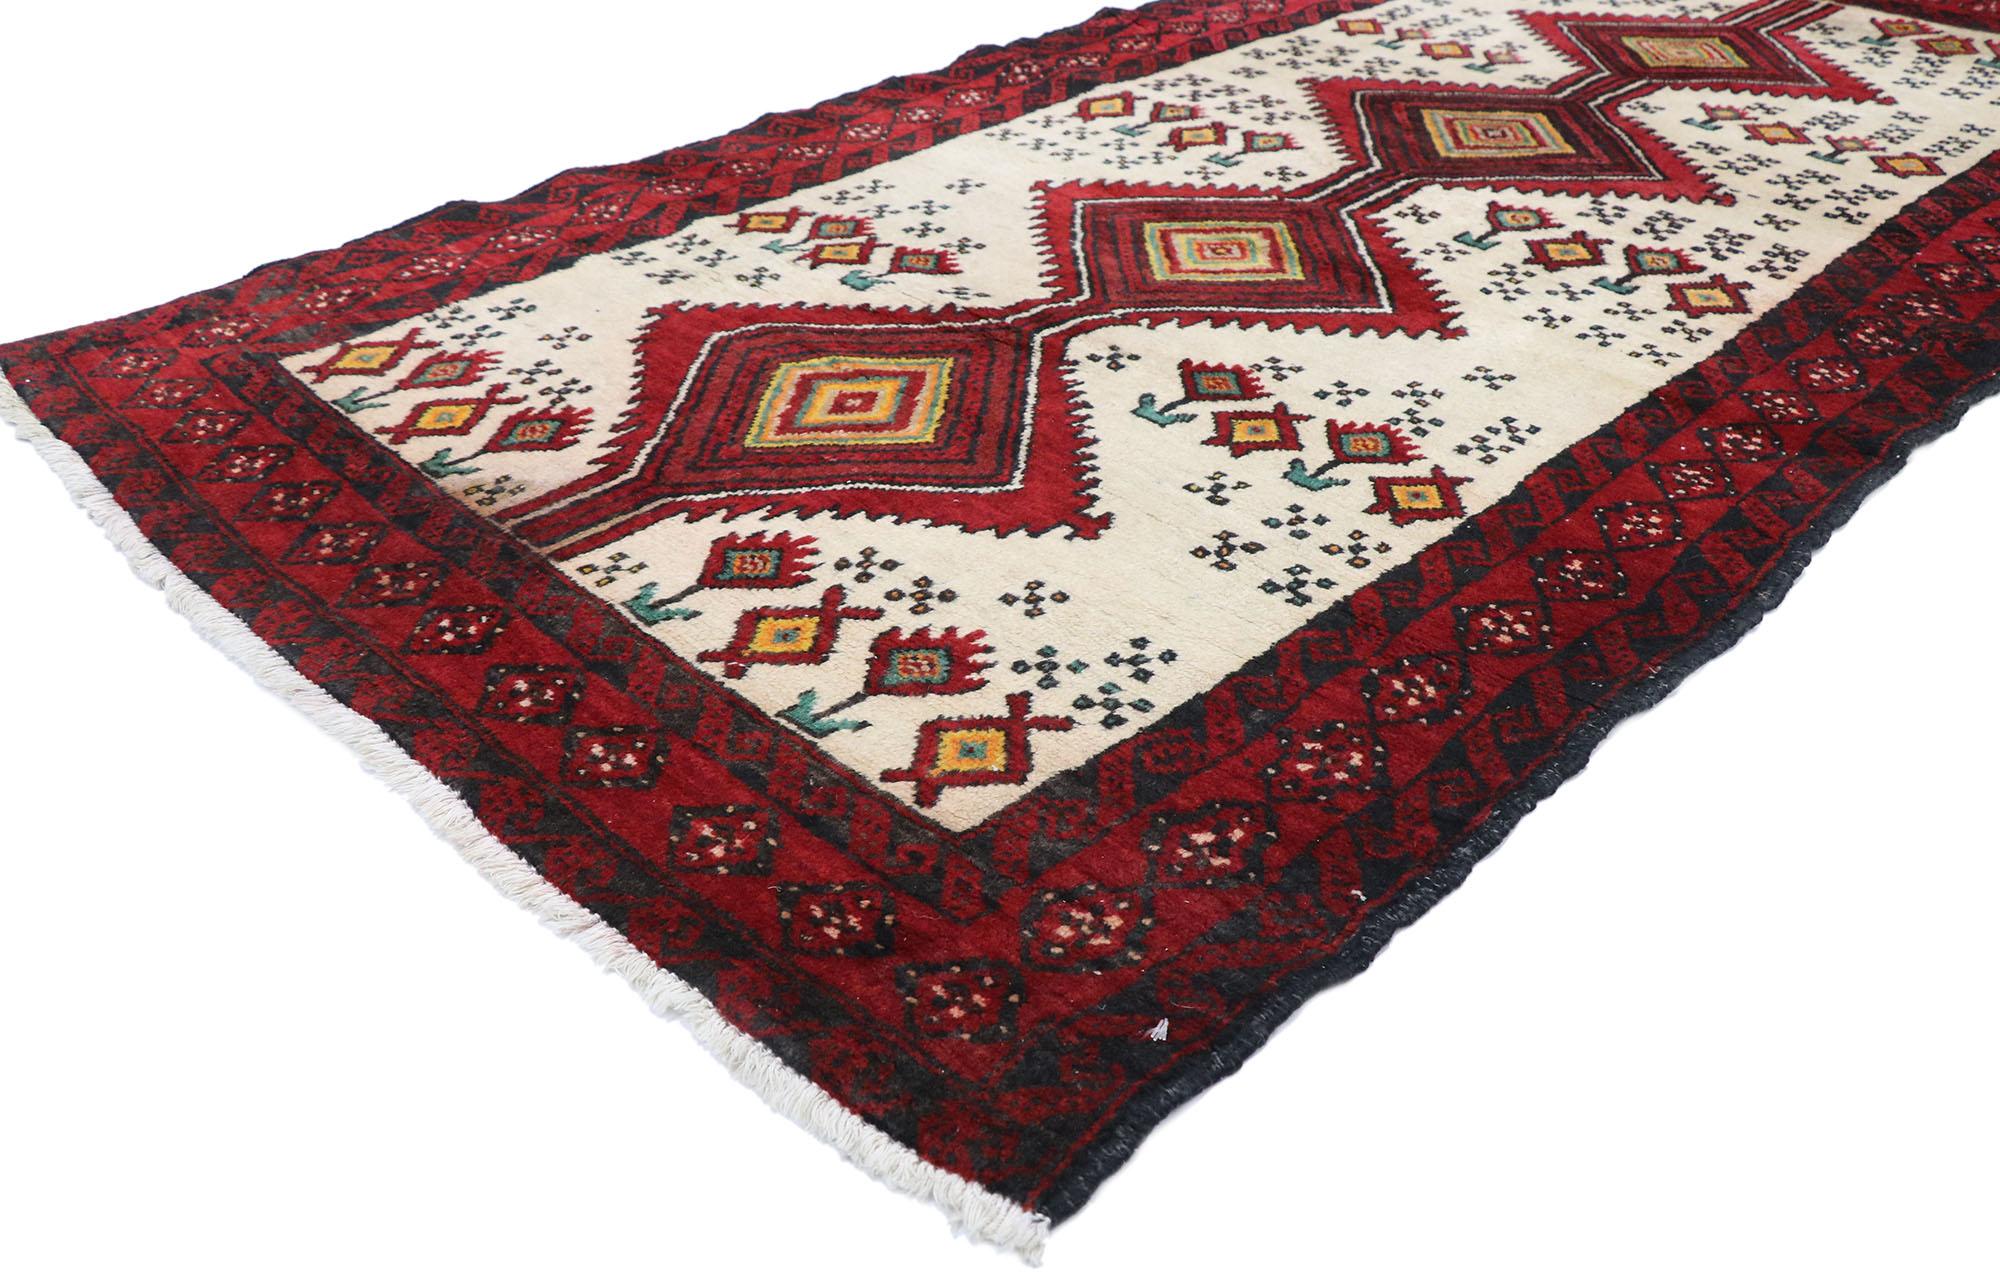 77712 Vieux tapis persan Baluch avec style tribal 03'04 x 06'06. Chaleureux et accueillant, avec son charme de village nomade, ce tapis persan Baluch vintage en laine noué à la main est une vision captivante de la beauté tissée. Un médaillon en